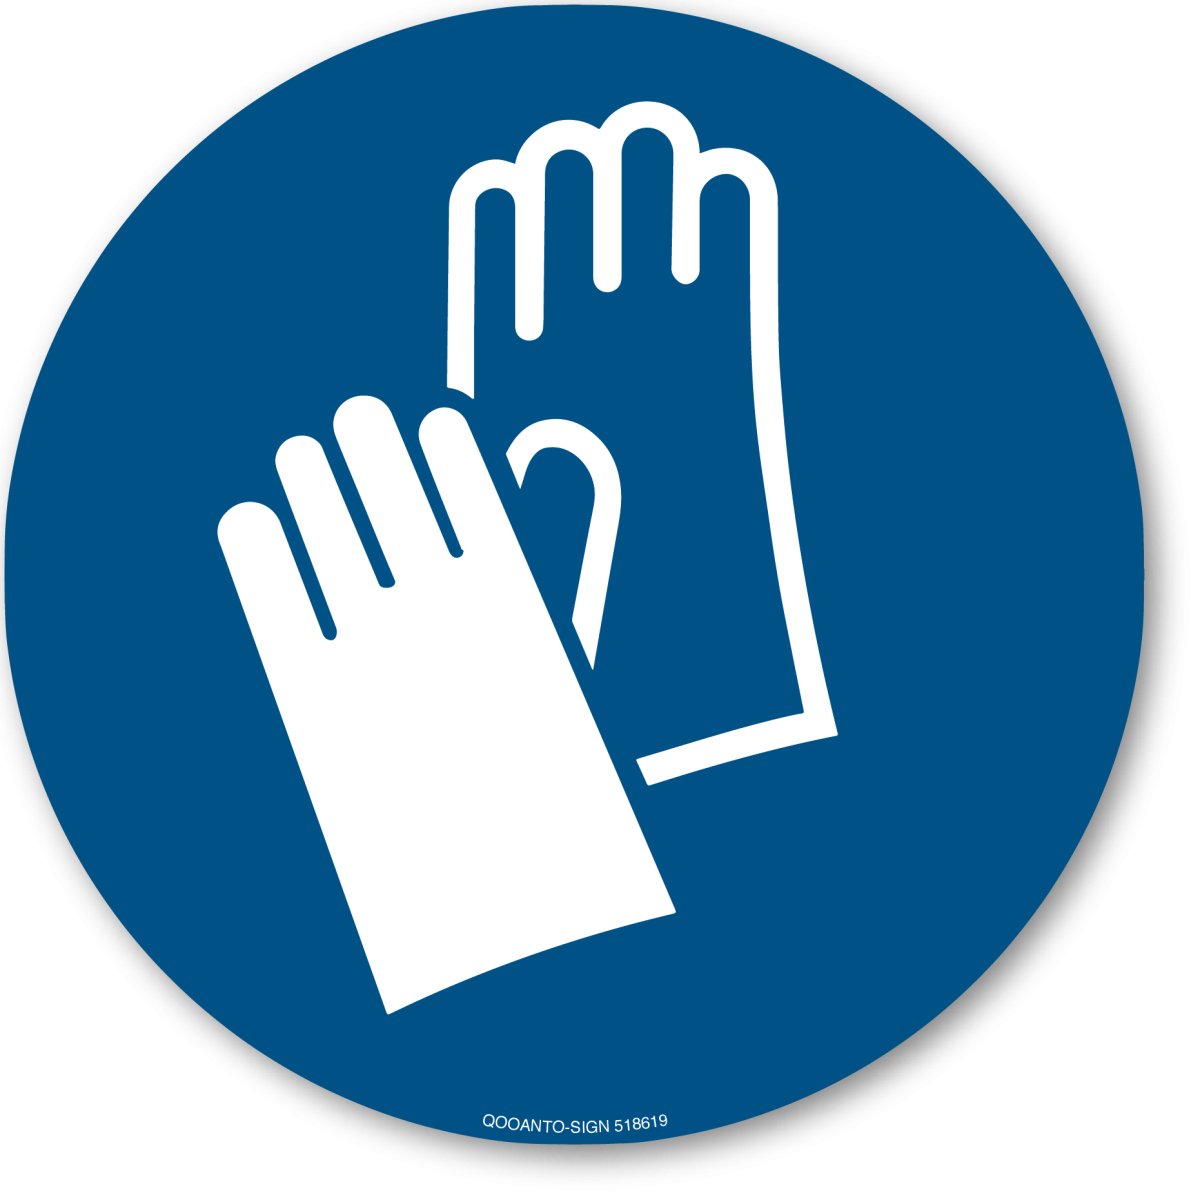 Handschutz Benutzen, EN ISO 7010, M009 Gebotsschild oder Aufkleber aus Alu-Verbund oder Selbstklebefolie mit UV-Schutz - QOOANTO-SIGN